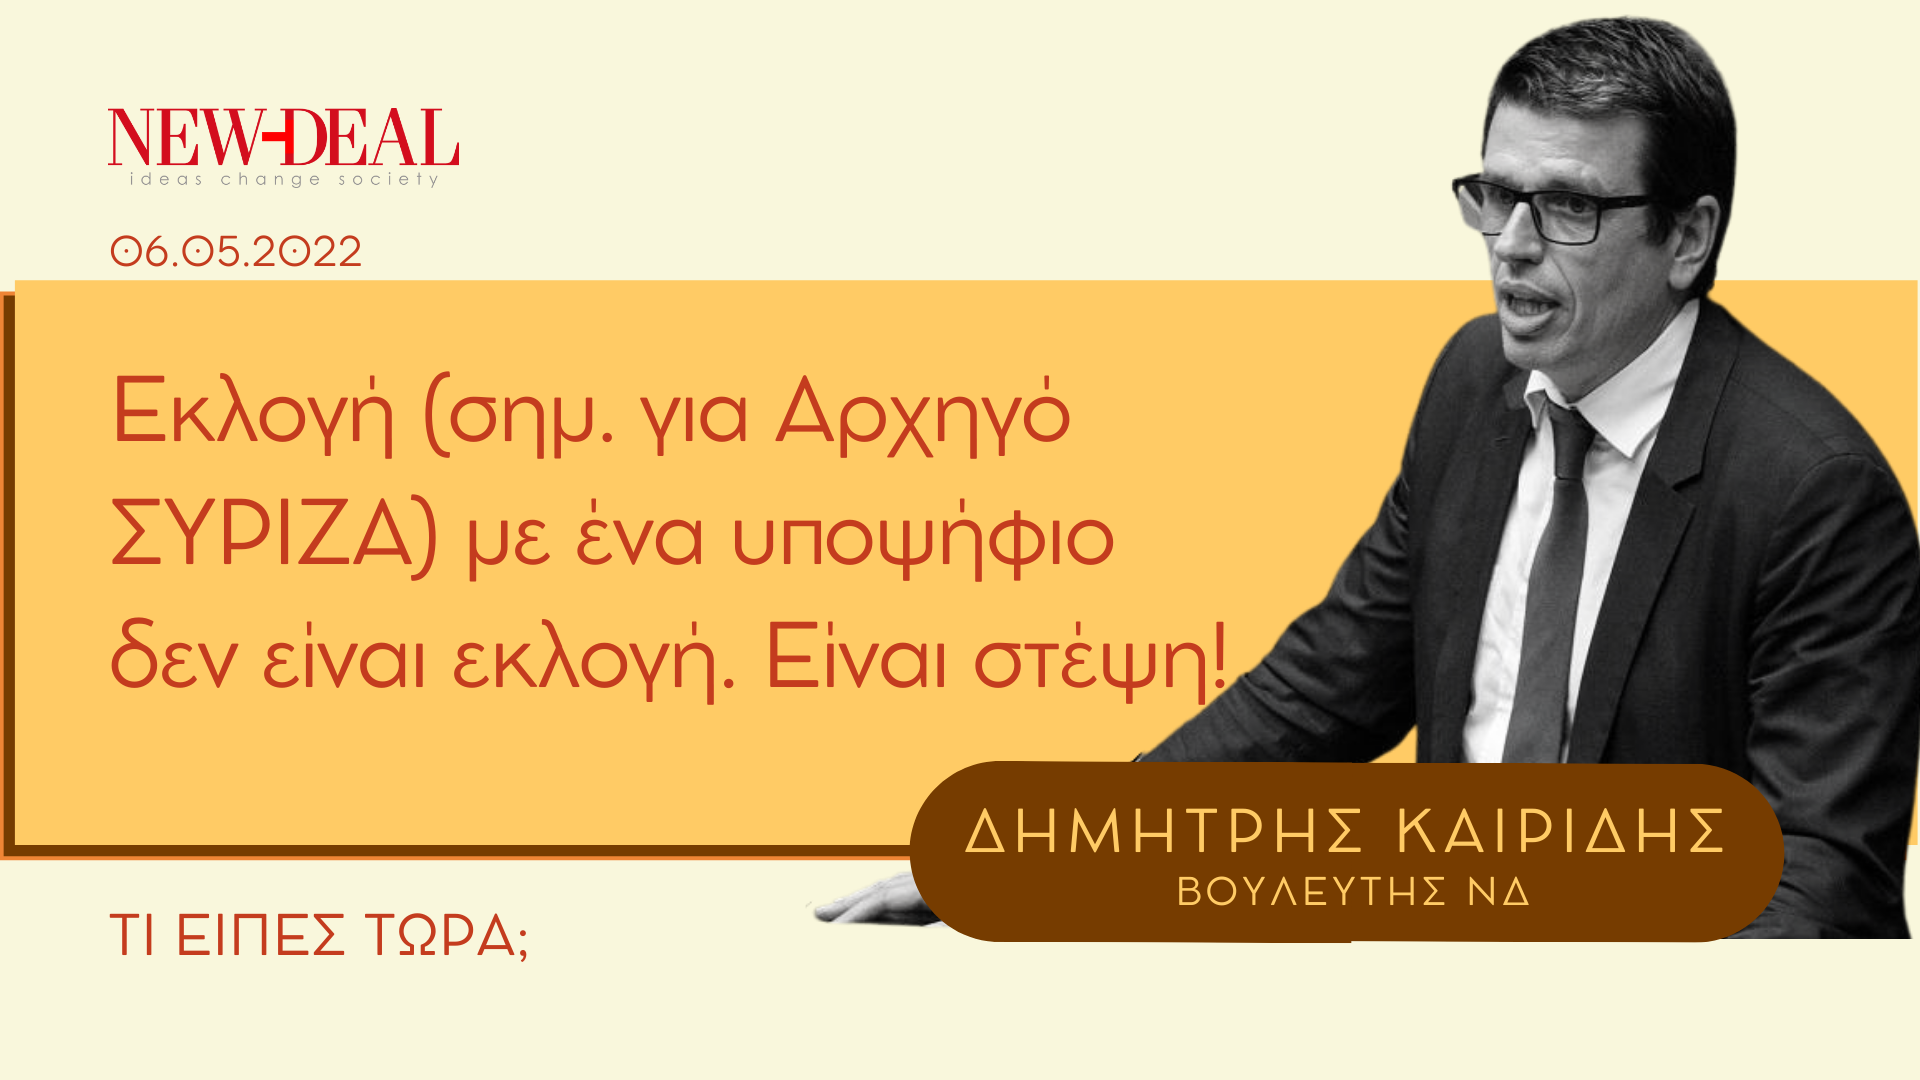 Δημήτρης Καιρίδης | Εκλογή με έναν υποψήφιο είναι στέψη! new deal